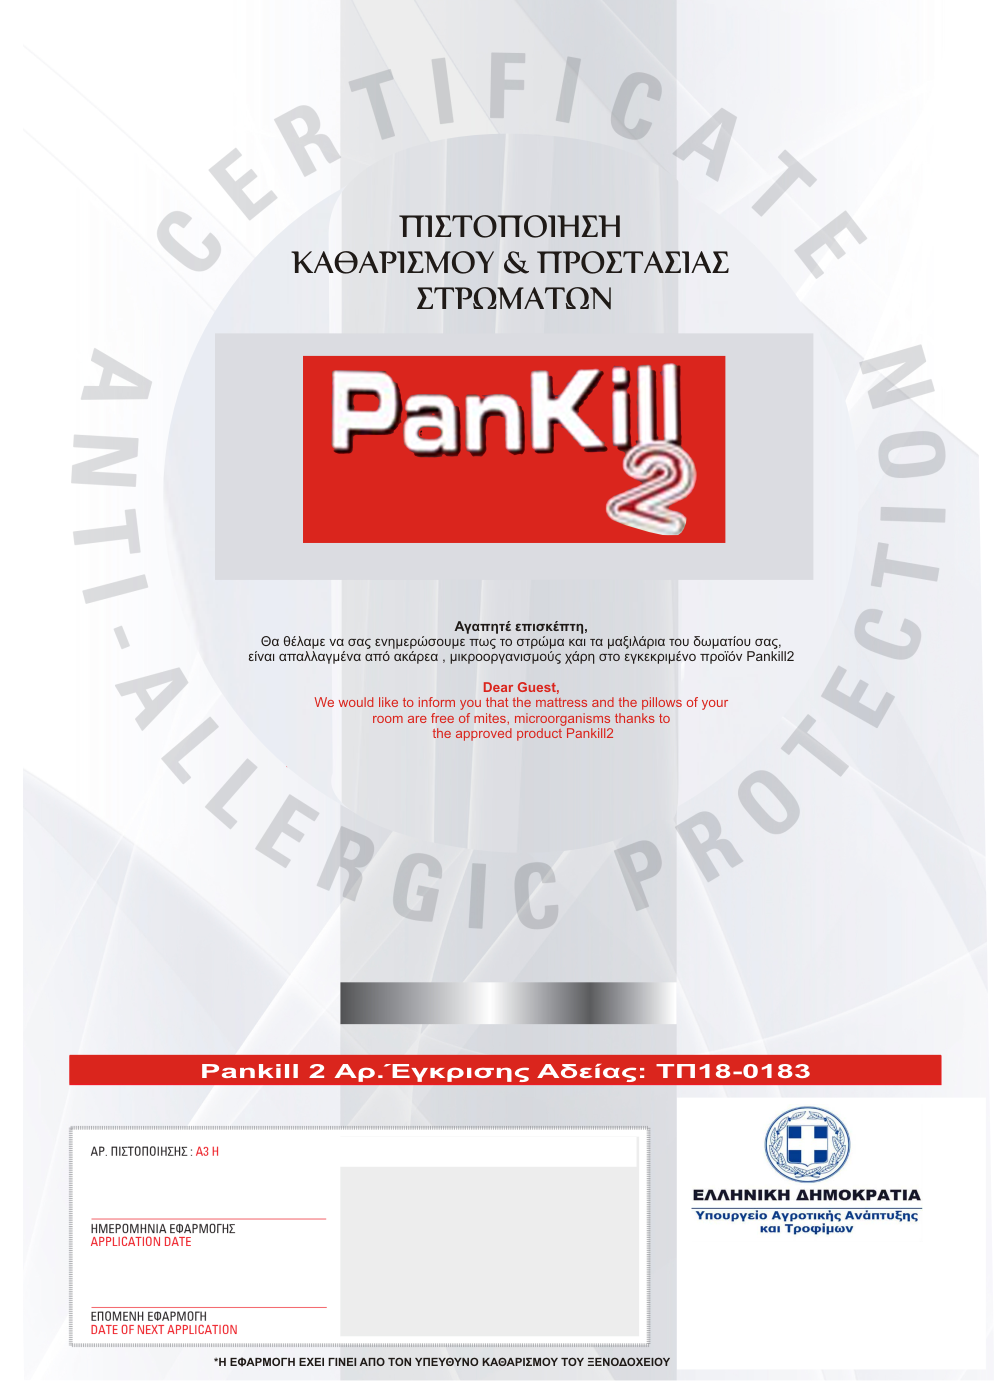 pankill 2